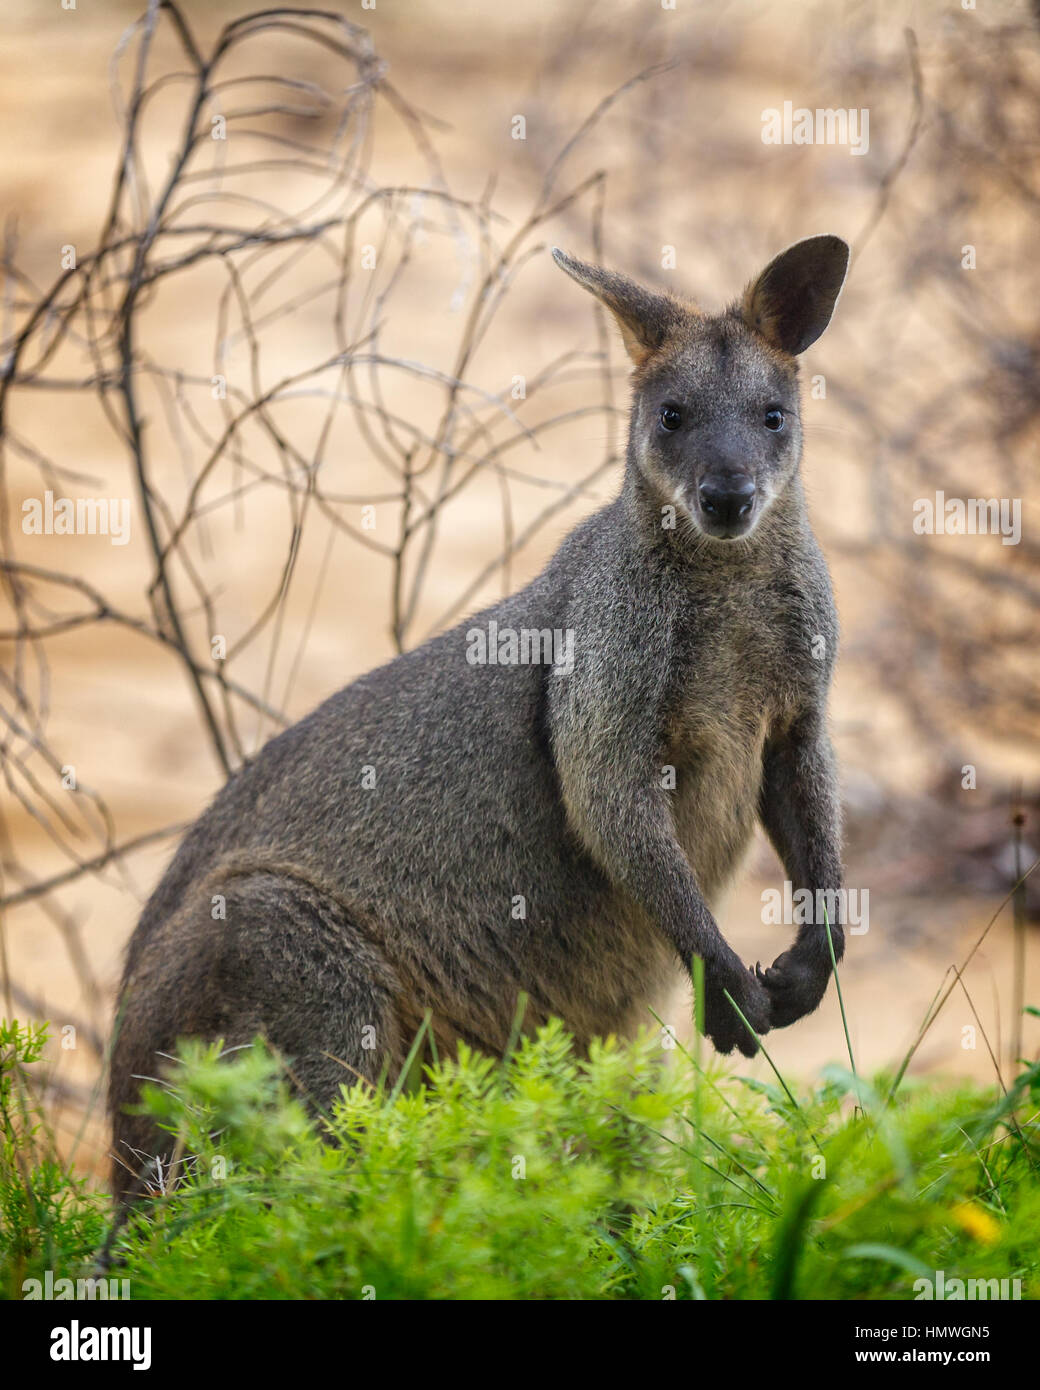 The swamp wallaby (Wallabia bicolor) near a green bush Stock Photo